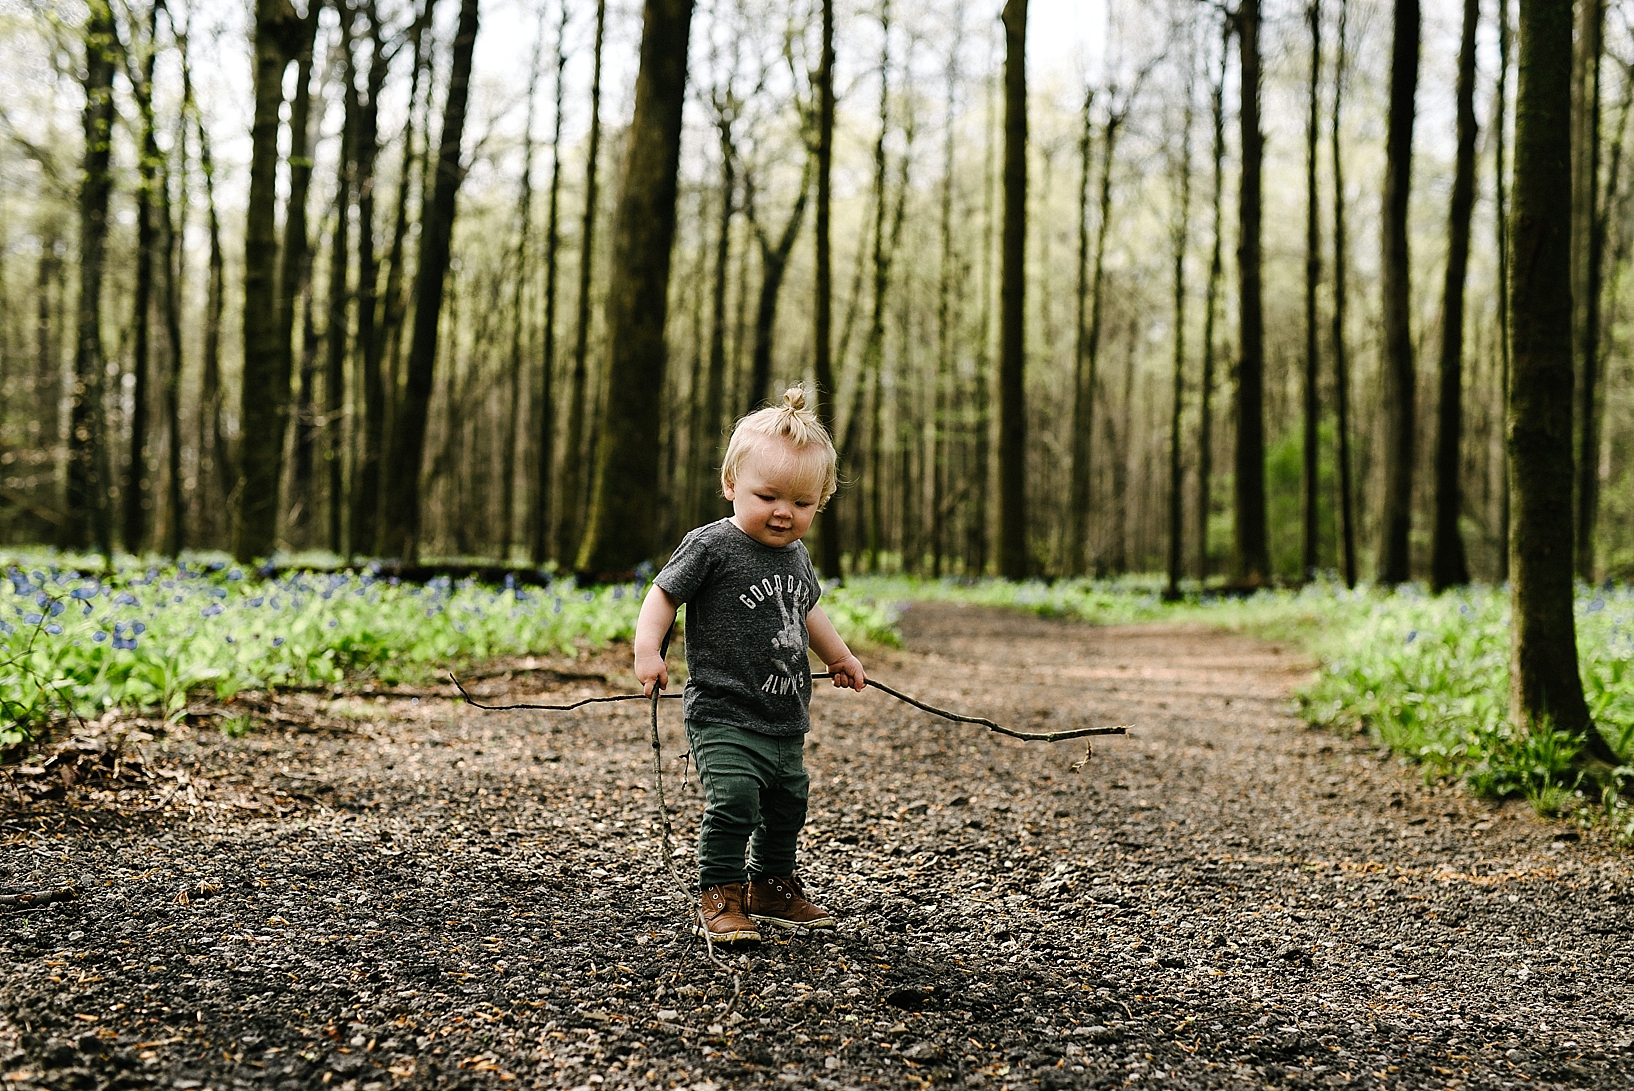 hipster toddler wearing man bun standing in woods holding sticks